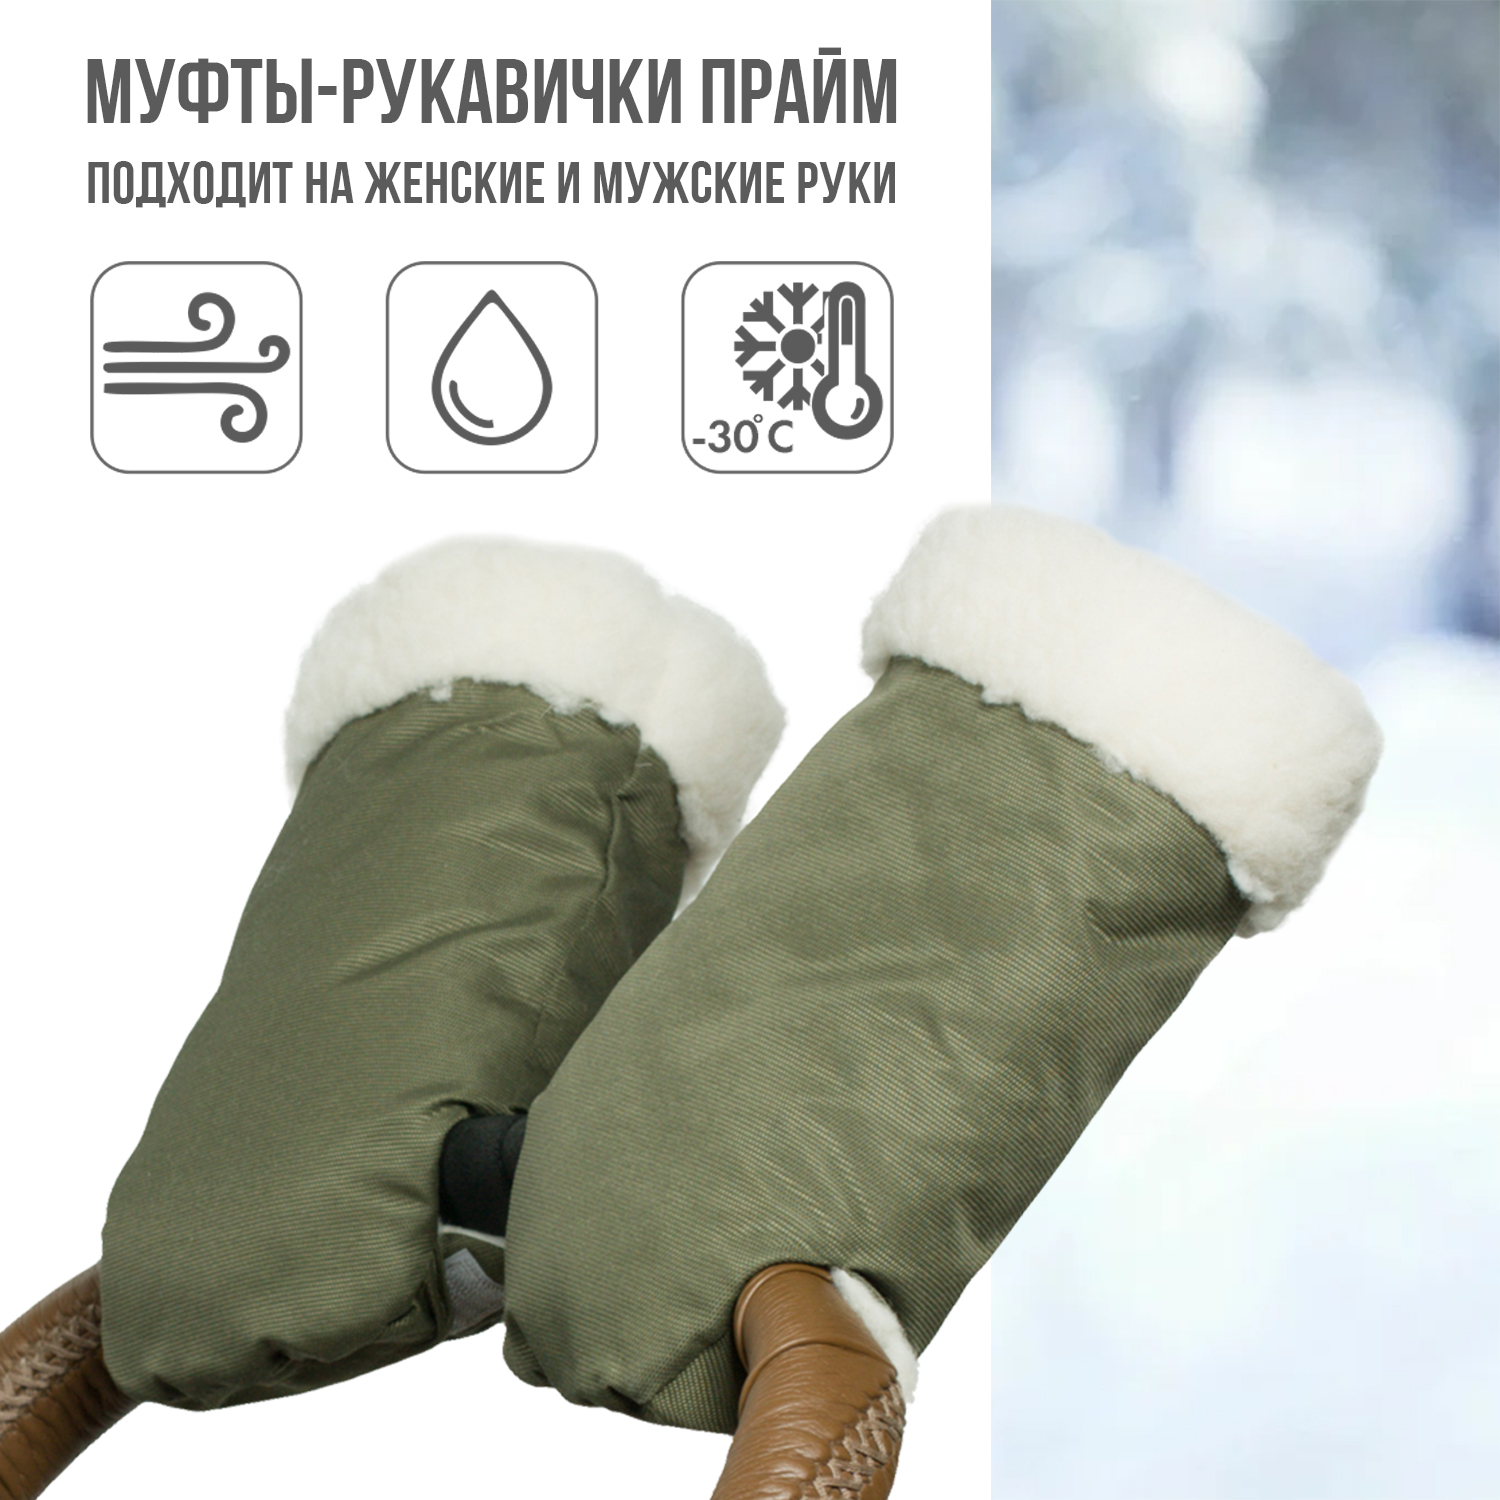 Муфта-рукавички для коляски Чудо-чадо меховая Прайм оливковая МРМ01-001 - фото 1